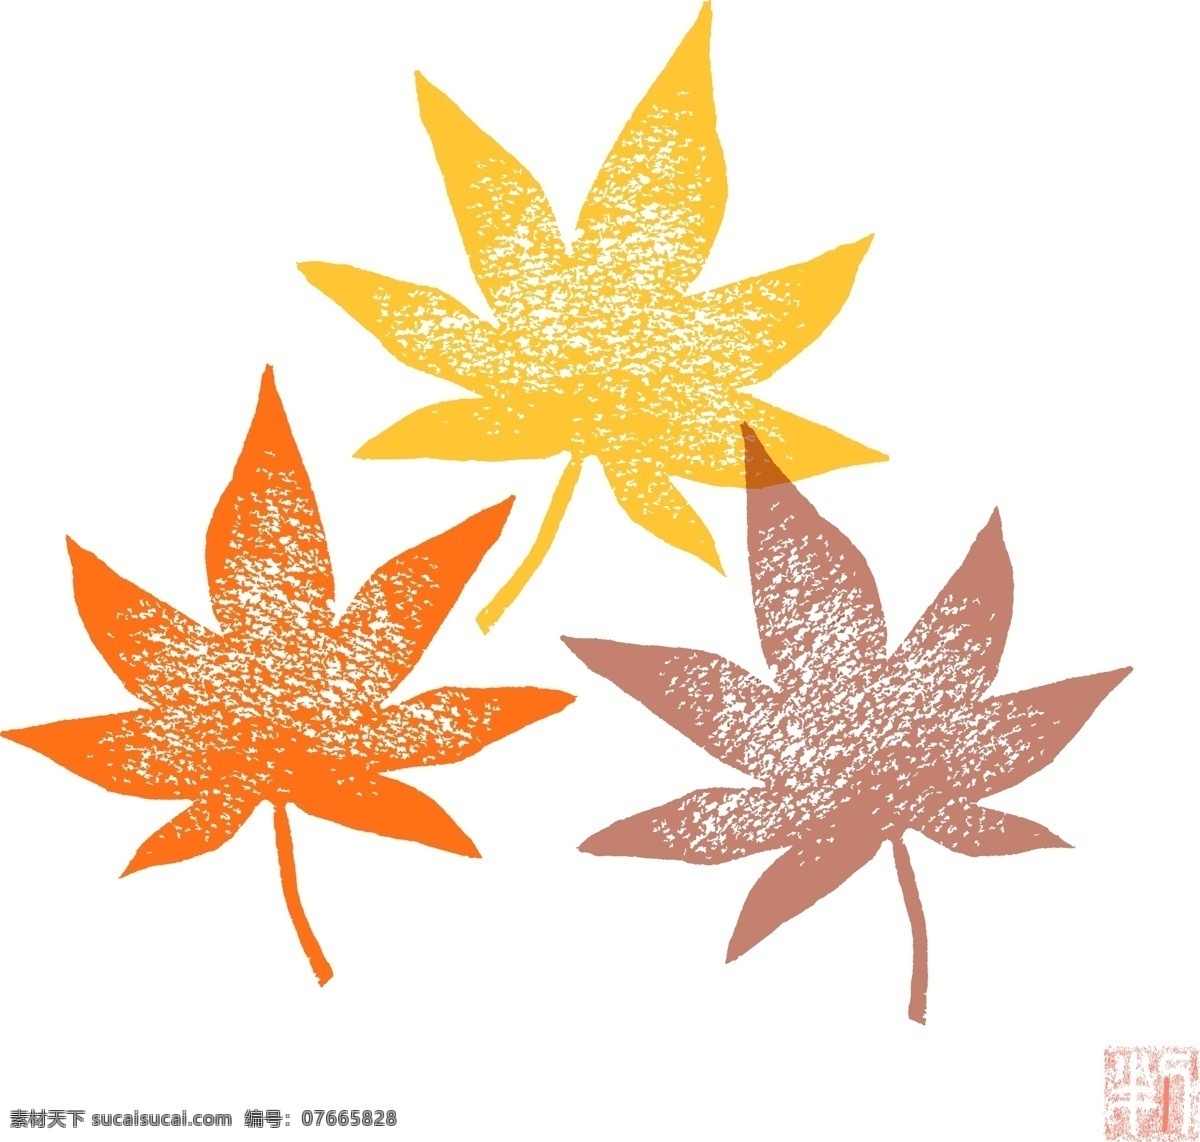 黄色 枫叶 设计素材 秋天 叶子 水彩 日系 图案 卡通 绘画 物品 头像 橡皮章 风格 矢量素材